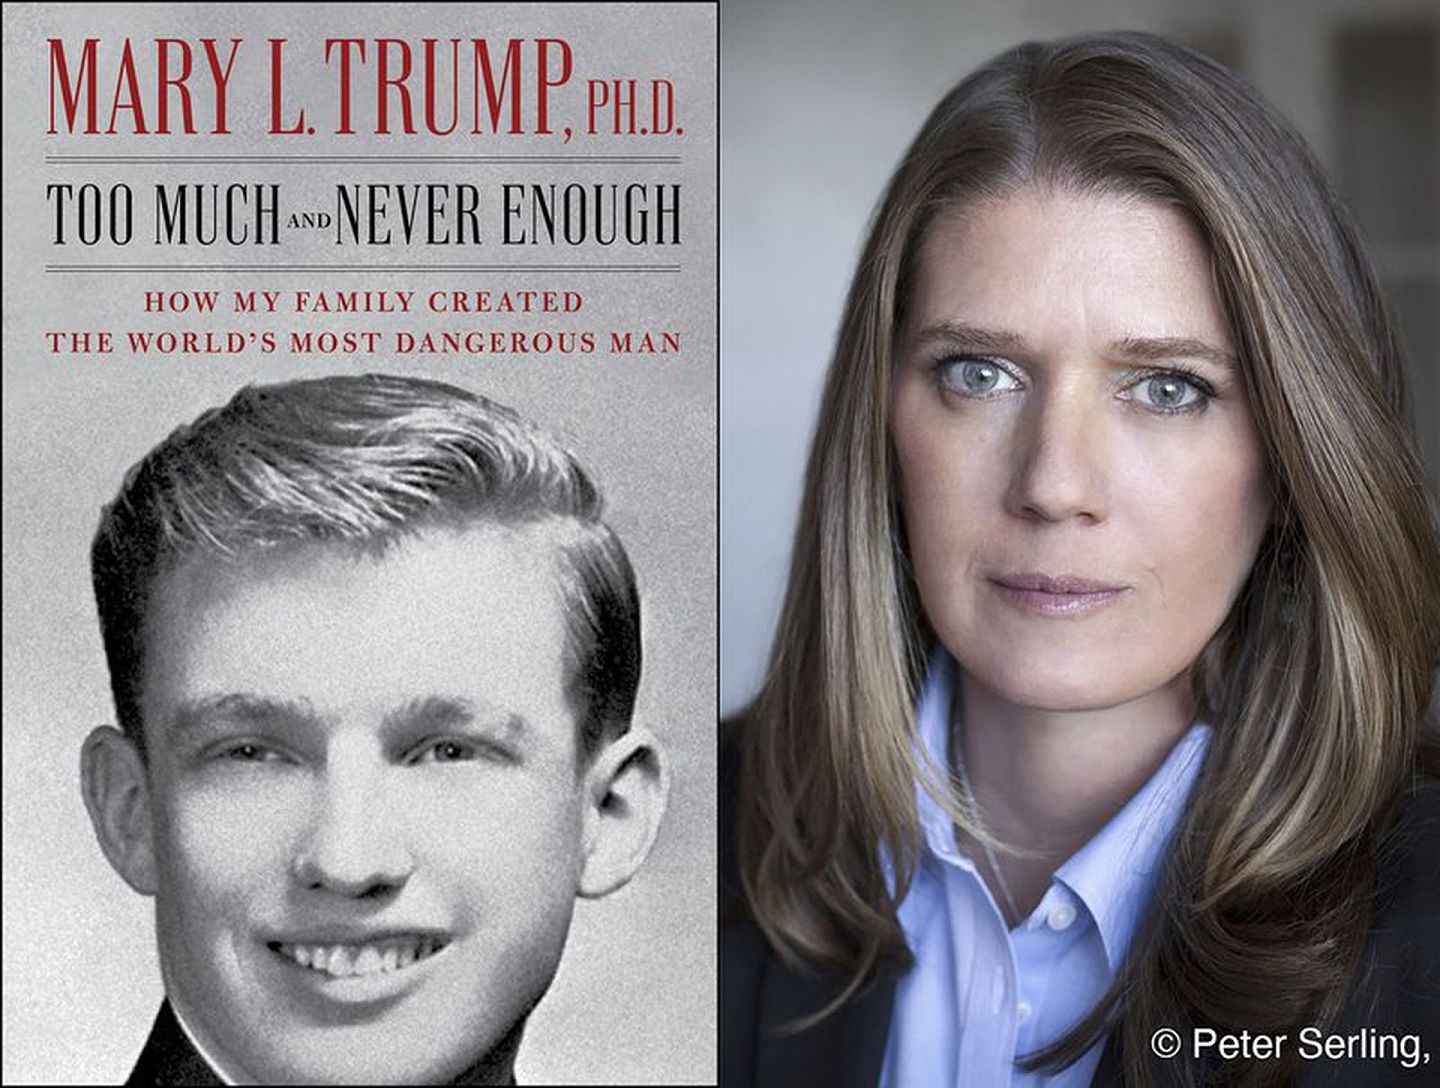 玛丽•特朗普撰写的新书《过多与永匮：我的家族如何造就了世界上最危险的人》揭露了美国总统特朗普的很多年轻时不为人知的恶行。（美联社）